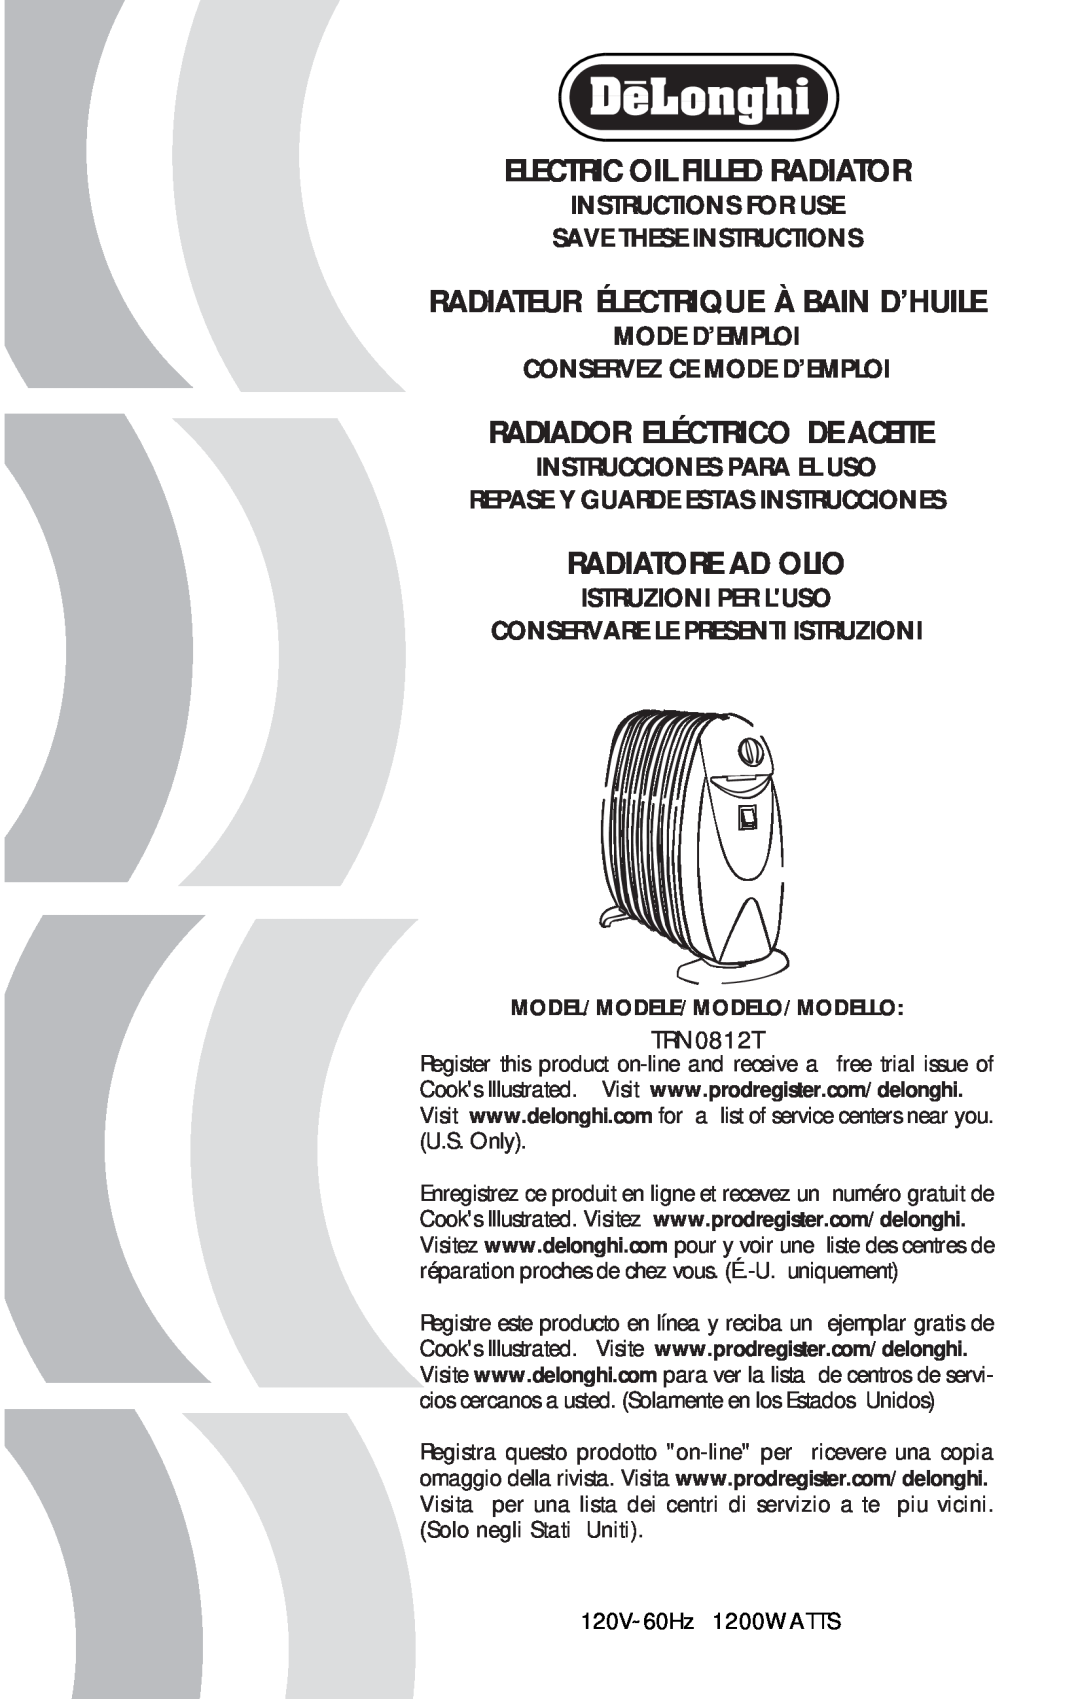 DeLonghi TRN0812T manual Electric Oil Filled Radiator, Radiateur Électrique À Bain D’Huile, Radiador Eléctrico De Aceite 